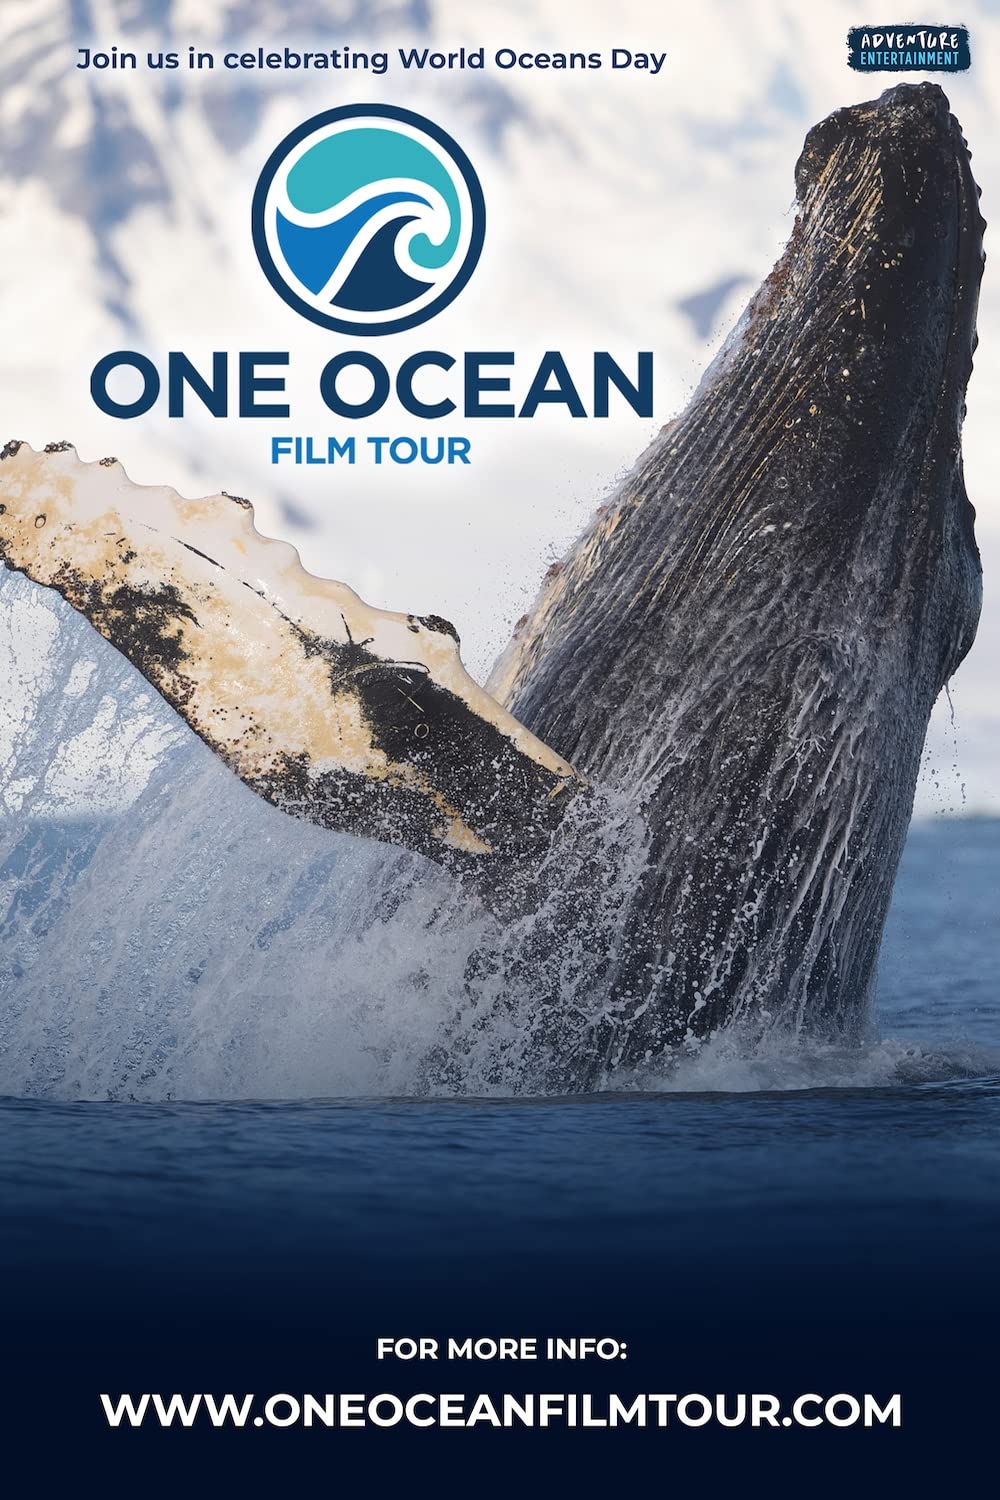 Ocean Film Tour 2022